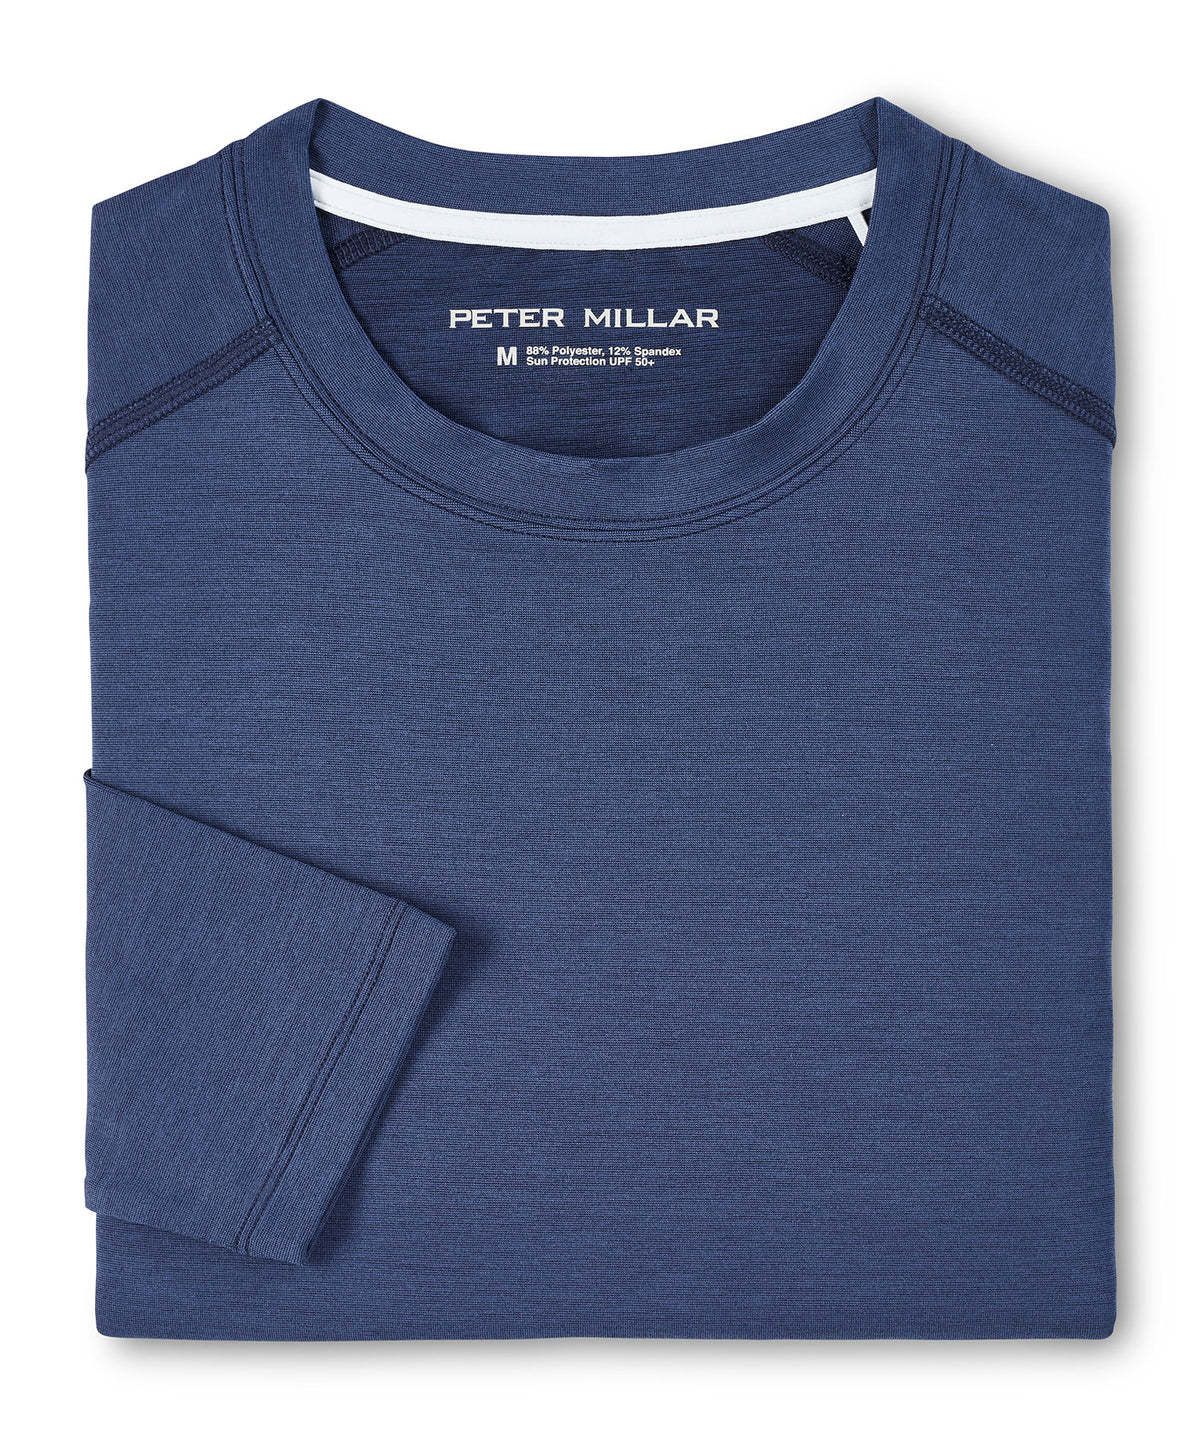 Peter Millar Long Sleeve Aurora Performance T-Shirt, Men's Big & Tall